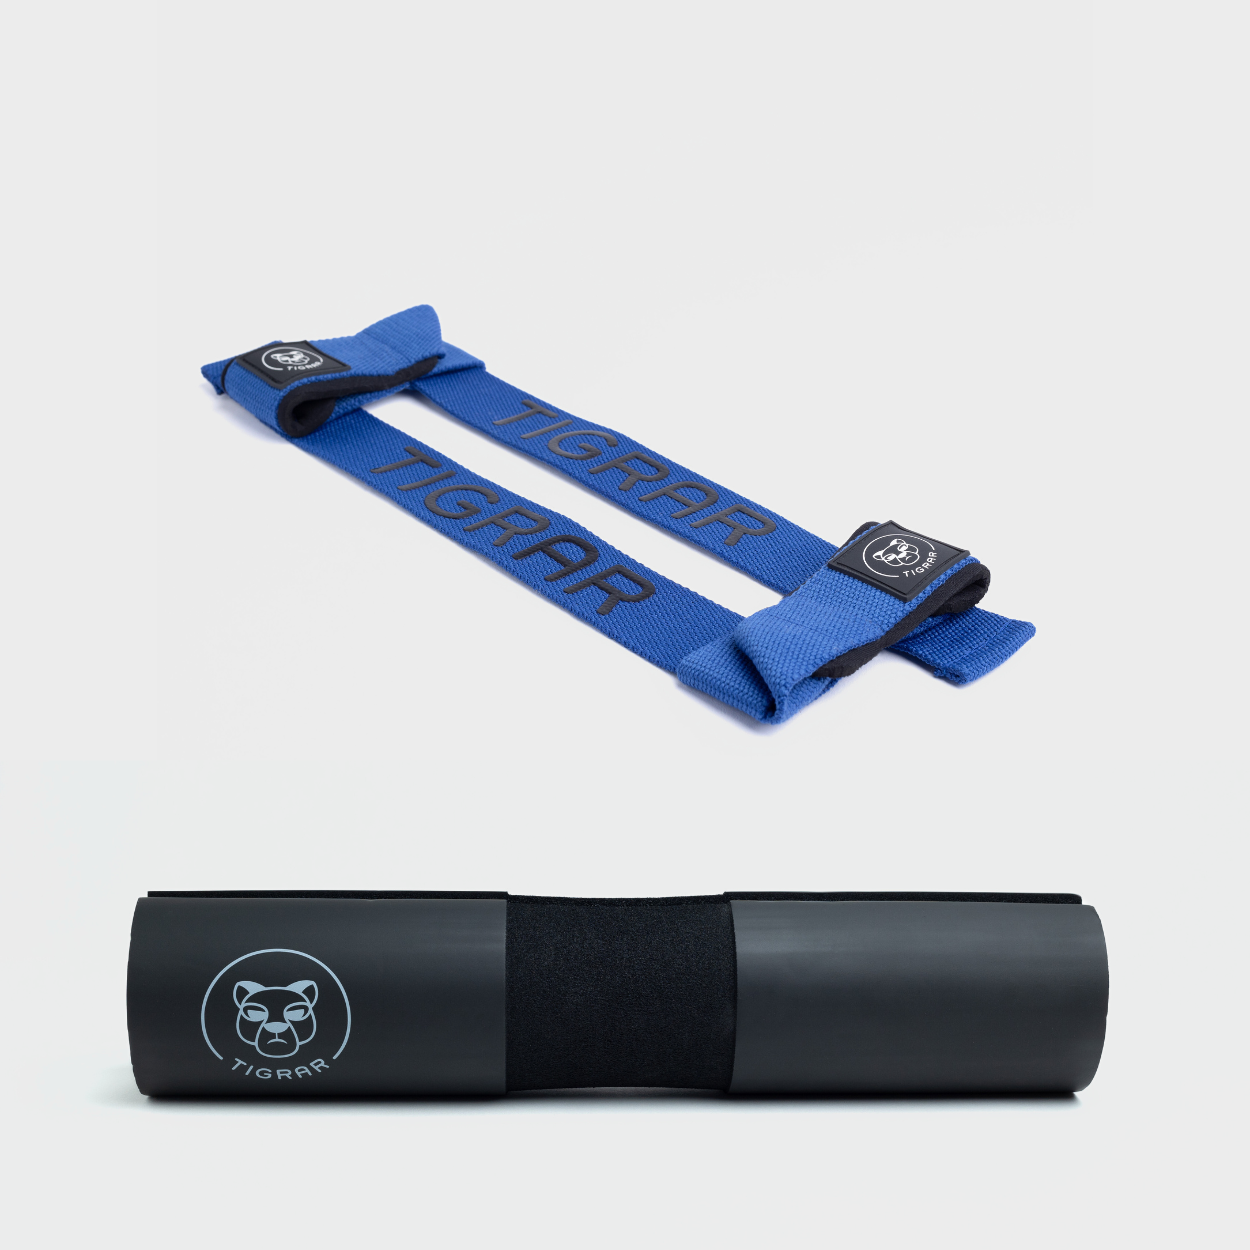 Veilige set van blauwe lifting straps en zwarte Tigrar barbell pad, anti-slip voor extra stabiliteit tijdens liften.